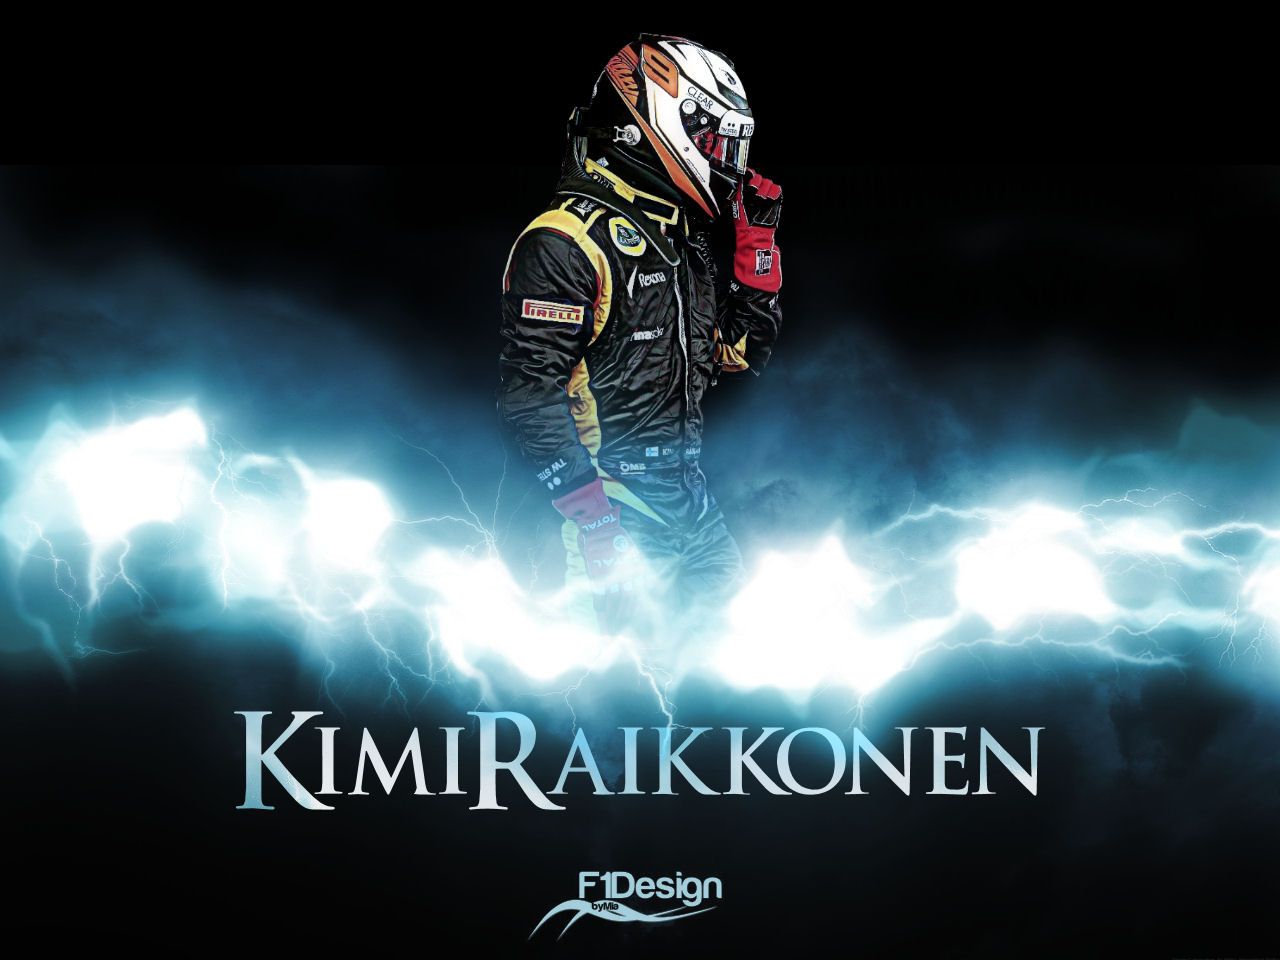  Kimi Räikkönen Hintergrundbild 1280x960. 